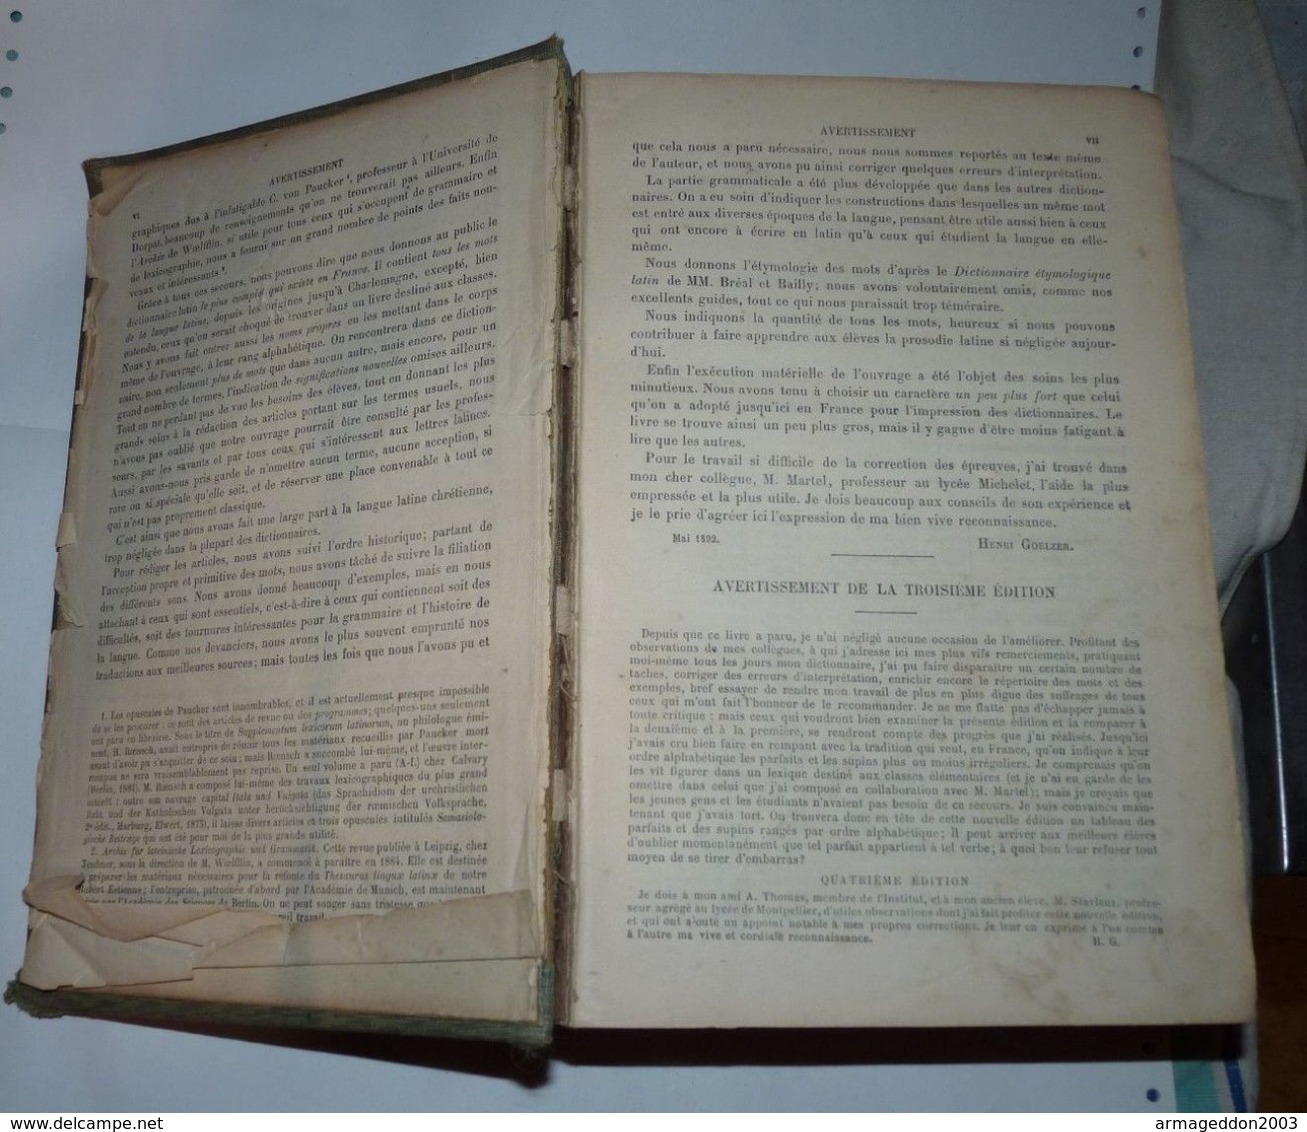 RARE ANCIEN DICTIONNAIRE LATIN FRANCAIS 1912 BENOIST GOELZEL 6eme EDITION 1713 p